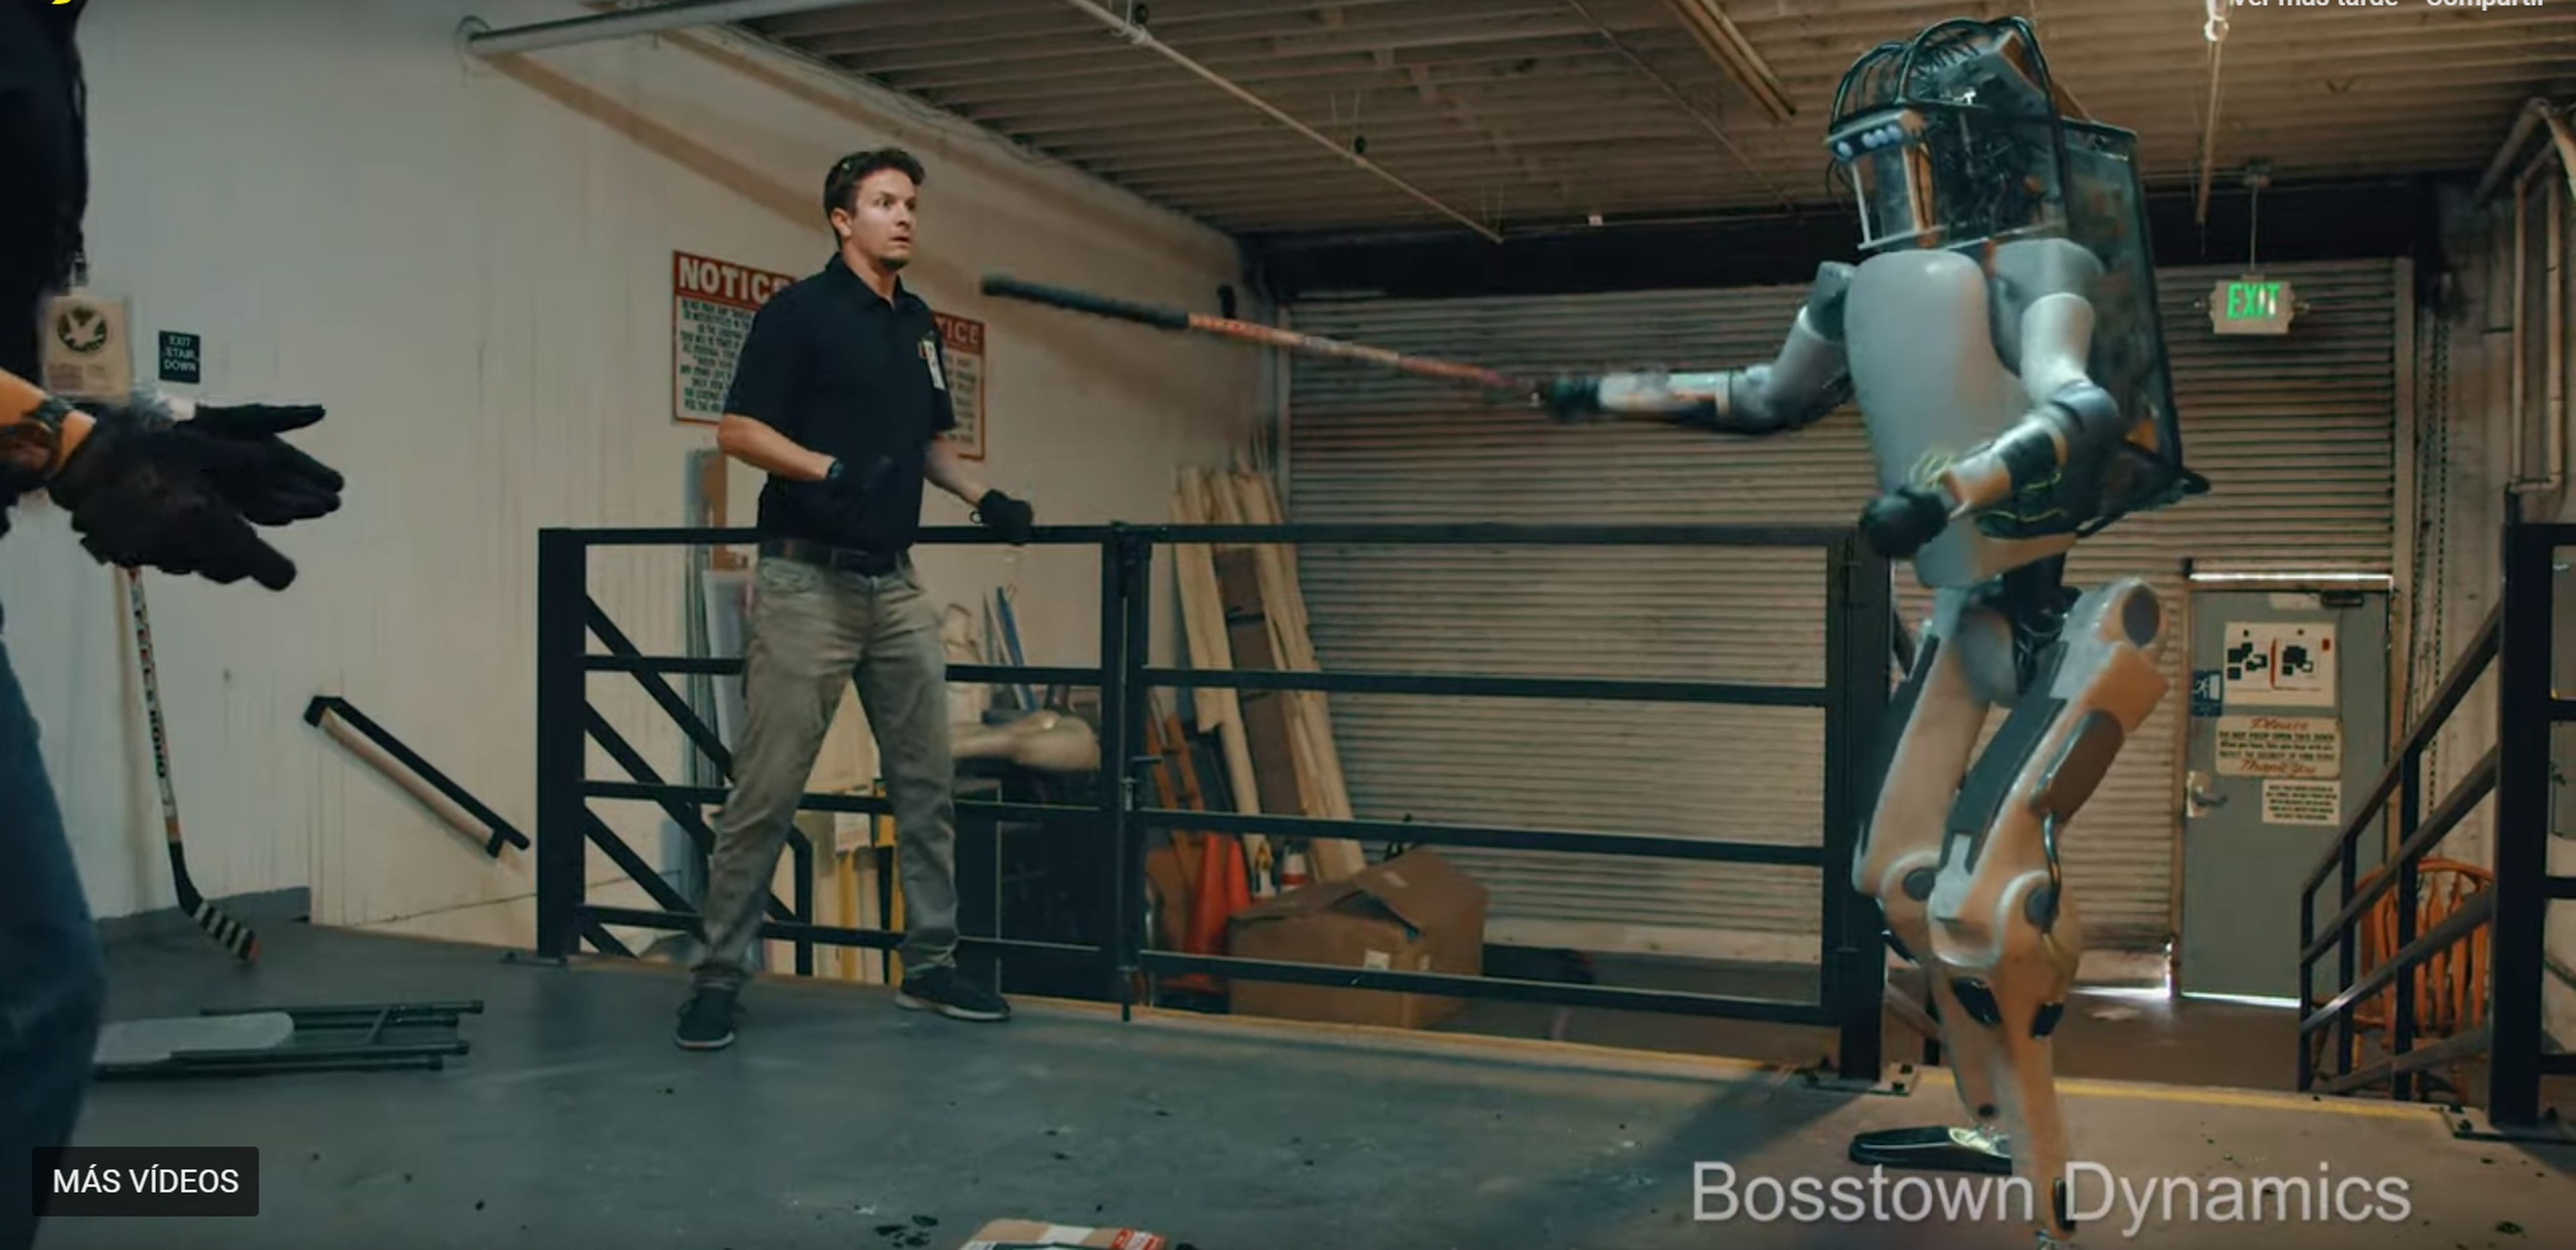 El robot aparece rebelándose contra sus creadores en el vídeo de Youtube.